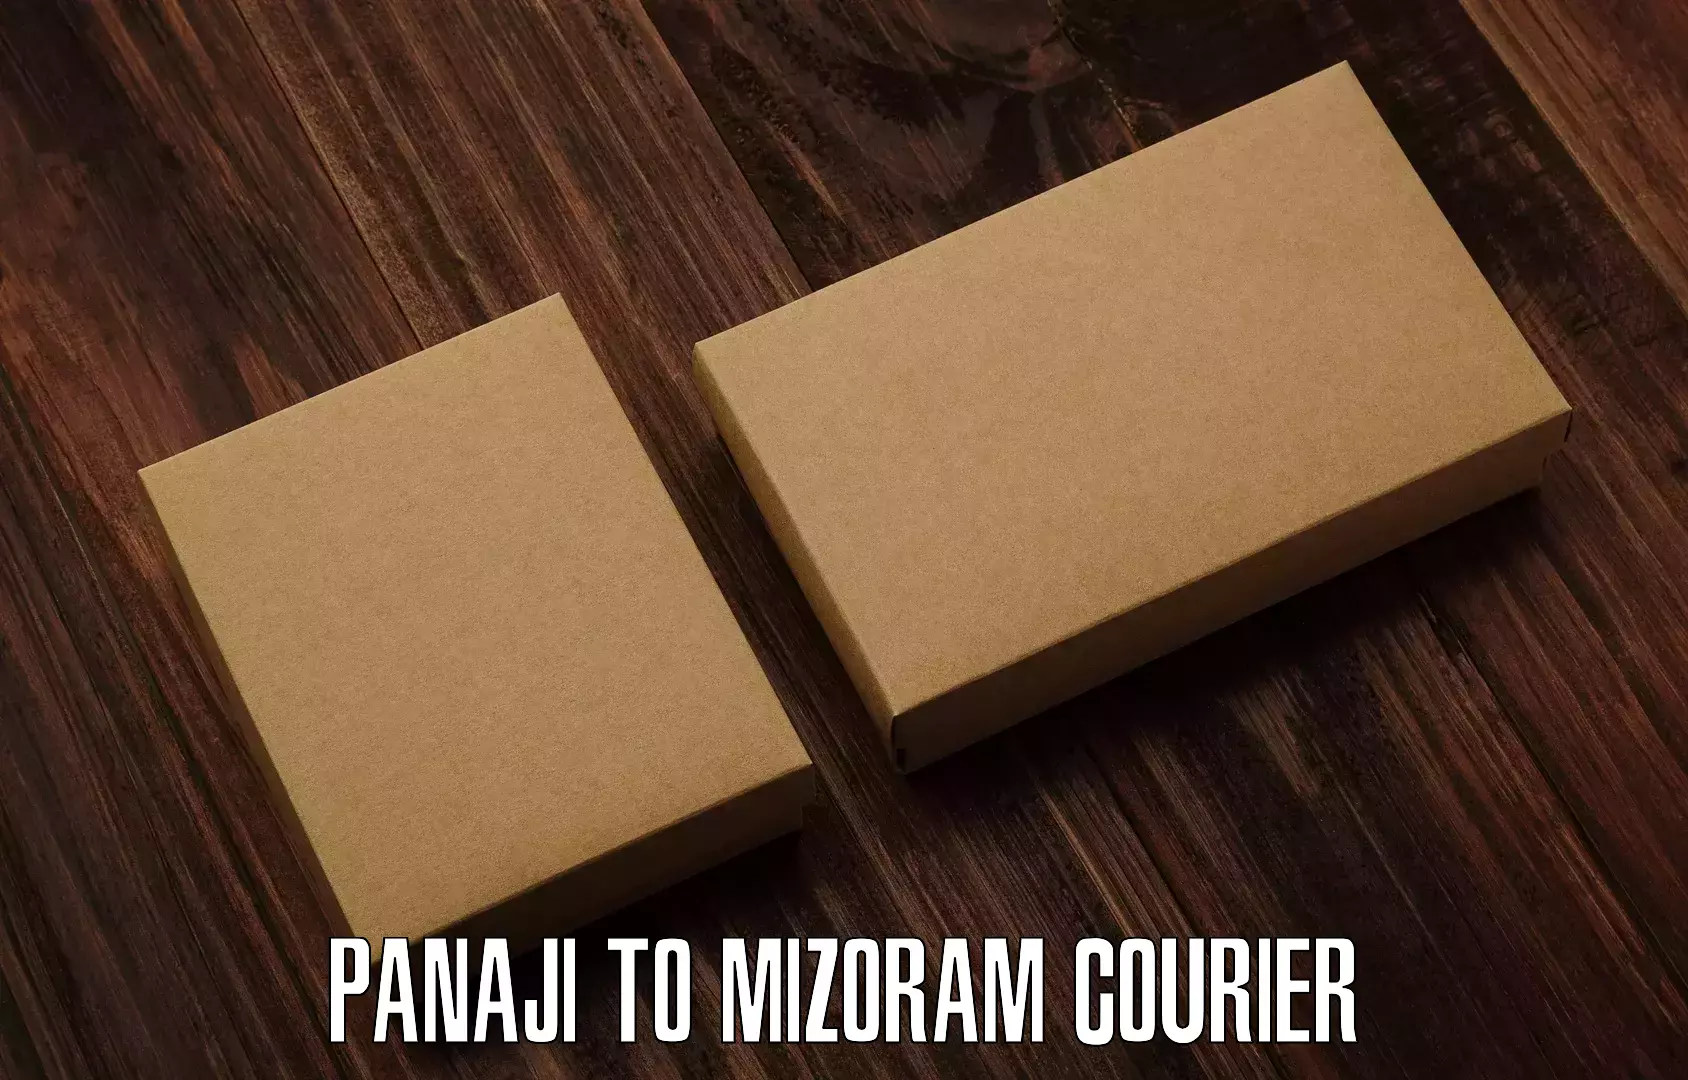 Pharmaceutical courier Panaji to Mizoram